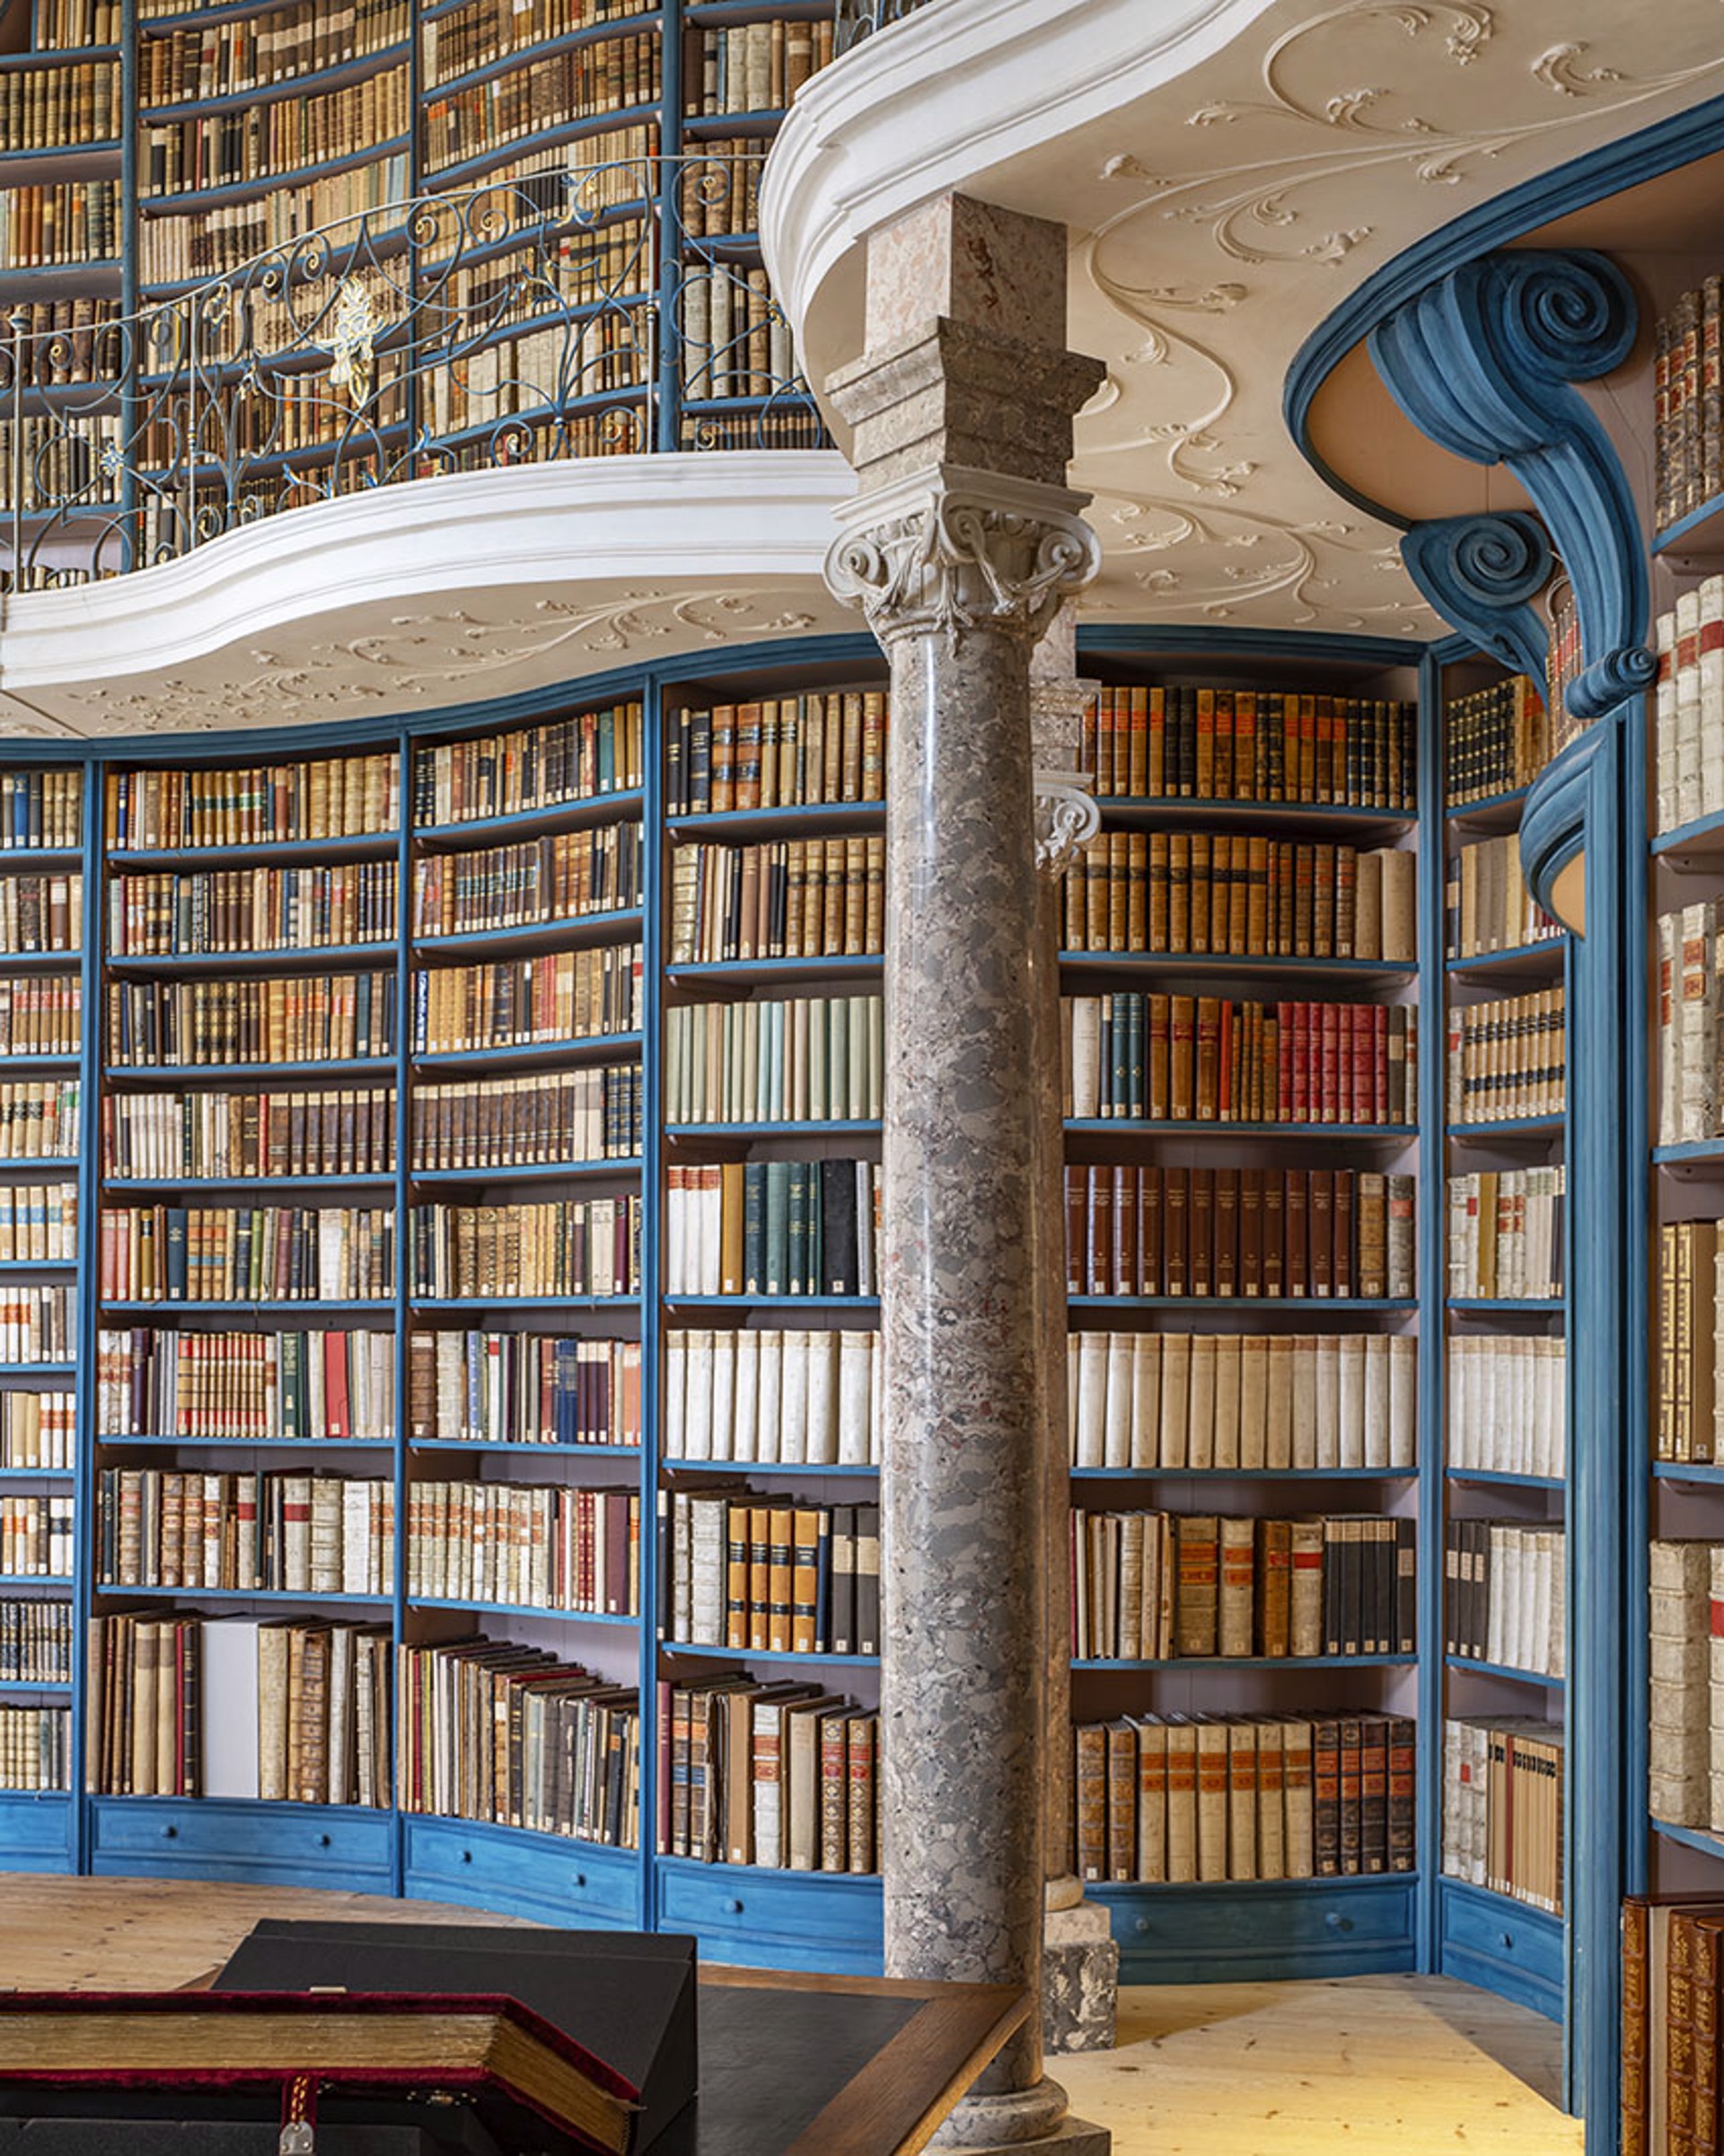 Einsiedeln Abbey Library II by Reinhard Goerner